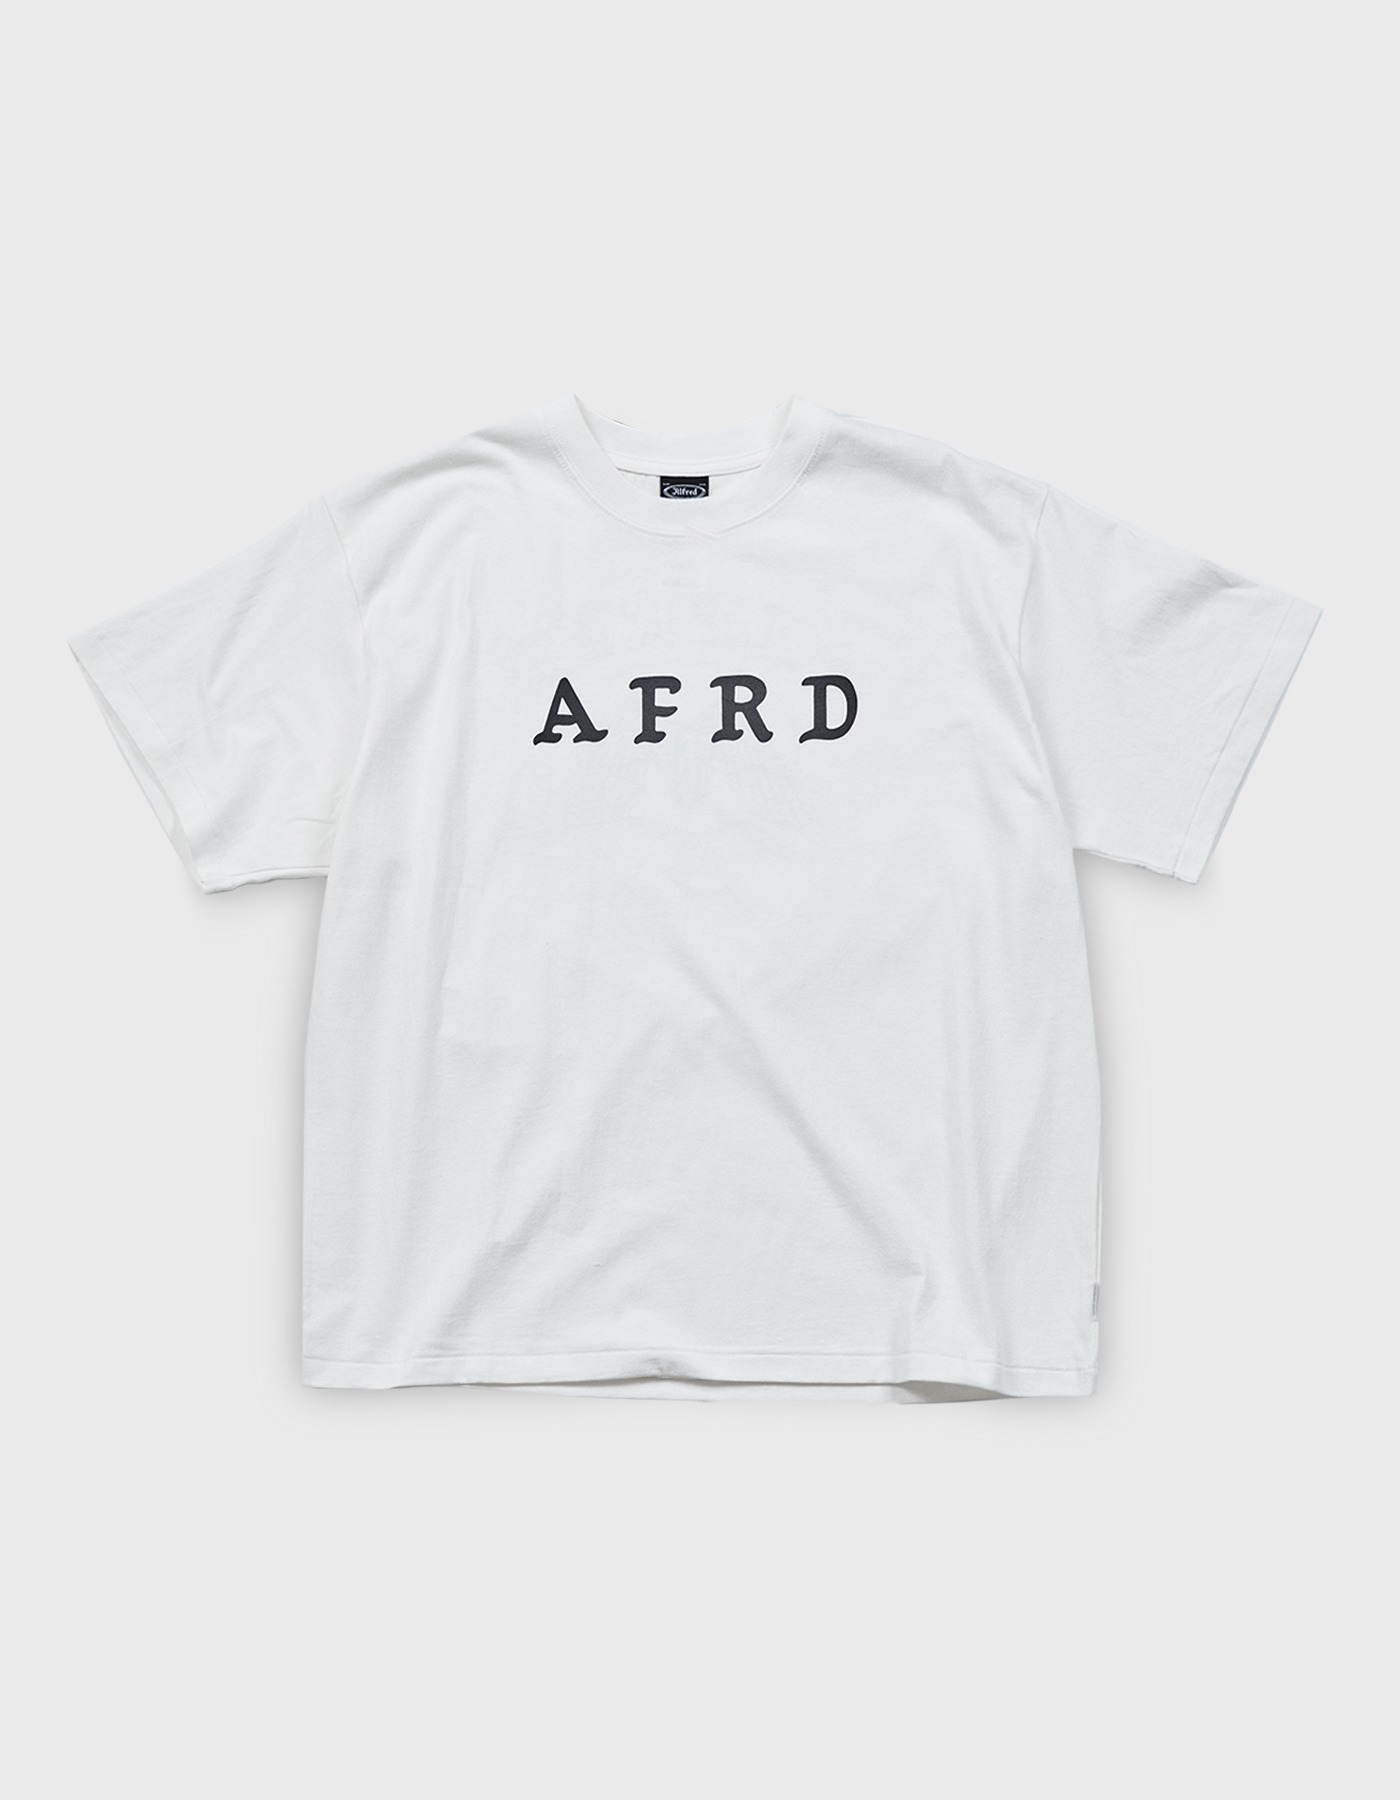 AFRD T-SHIRT / White